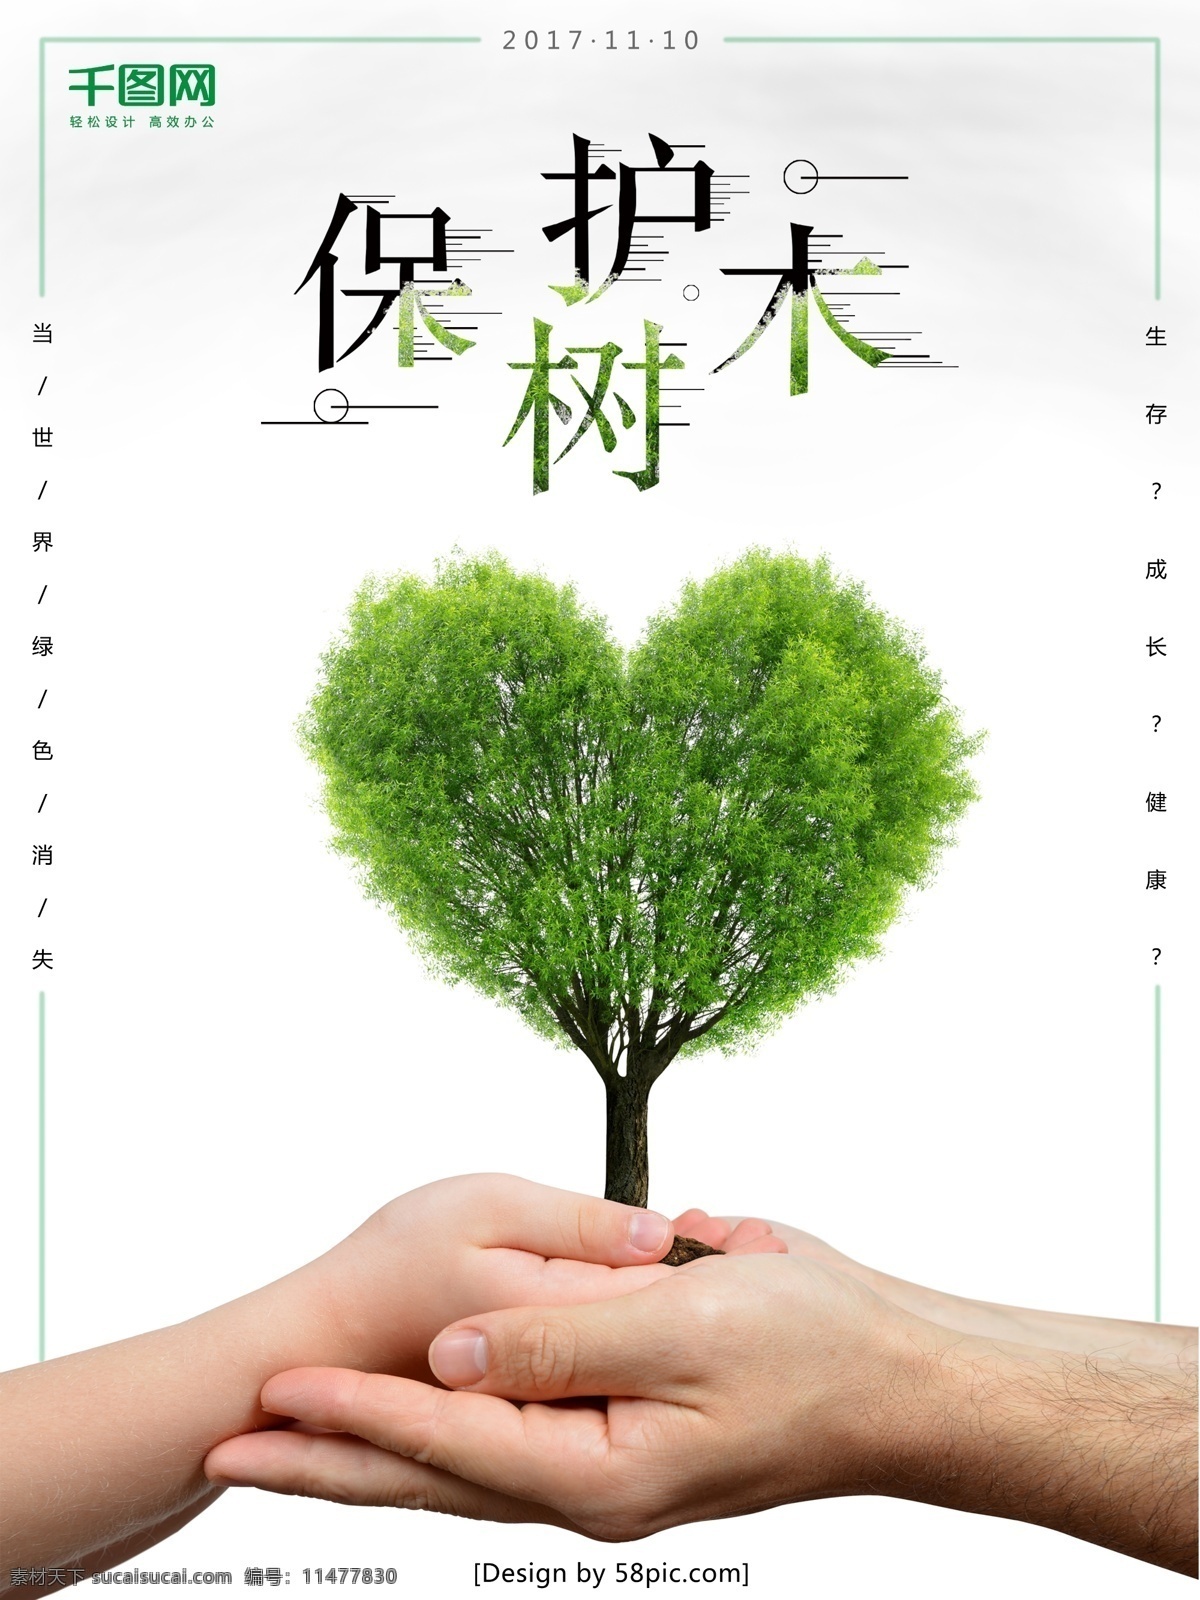 公益 环保 海报 保护 树木 手掌 大树 简洁 保护树木 清新 白色 原创